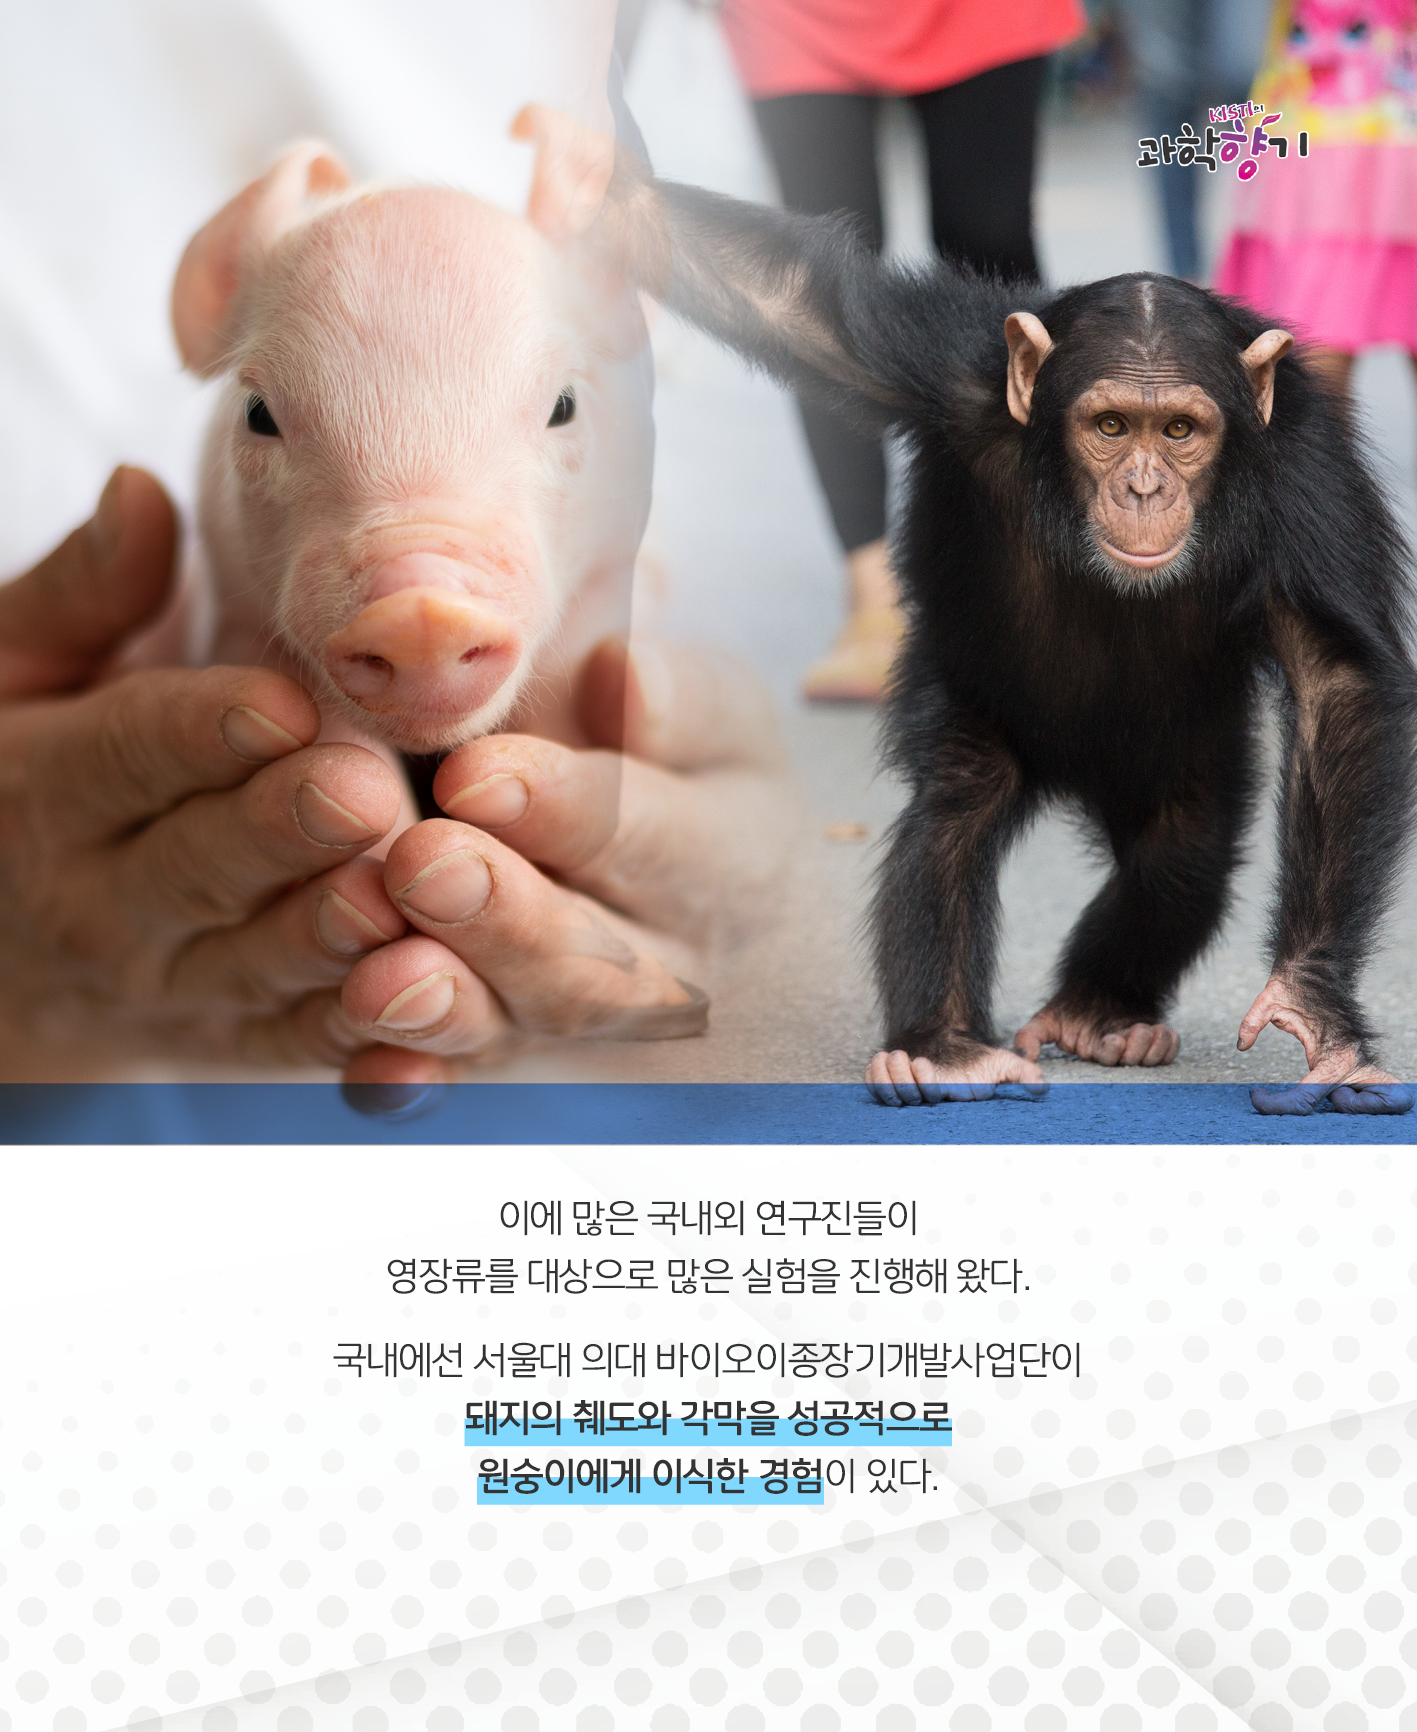 이에 많은 국내외 연구진들이 영장류를 대상으로 많은 실험을 진행해 왔다.   국내에선 서울대 의대 바이오이종장기개발사업단이 돼지의 췌도와 각막을 성공적으로 원숭이에게 이식한 경험이 있다